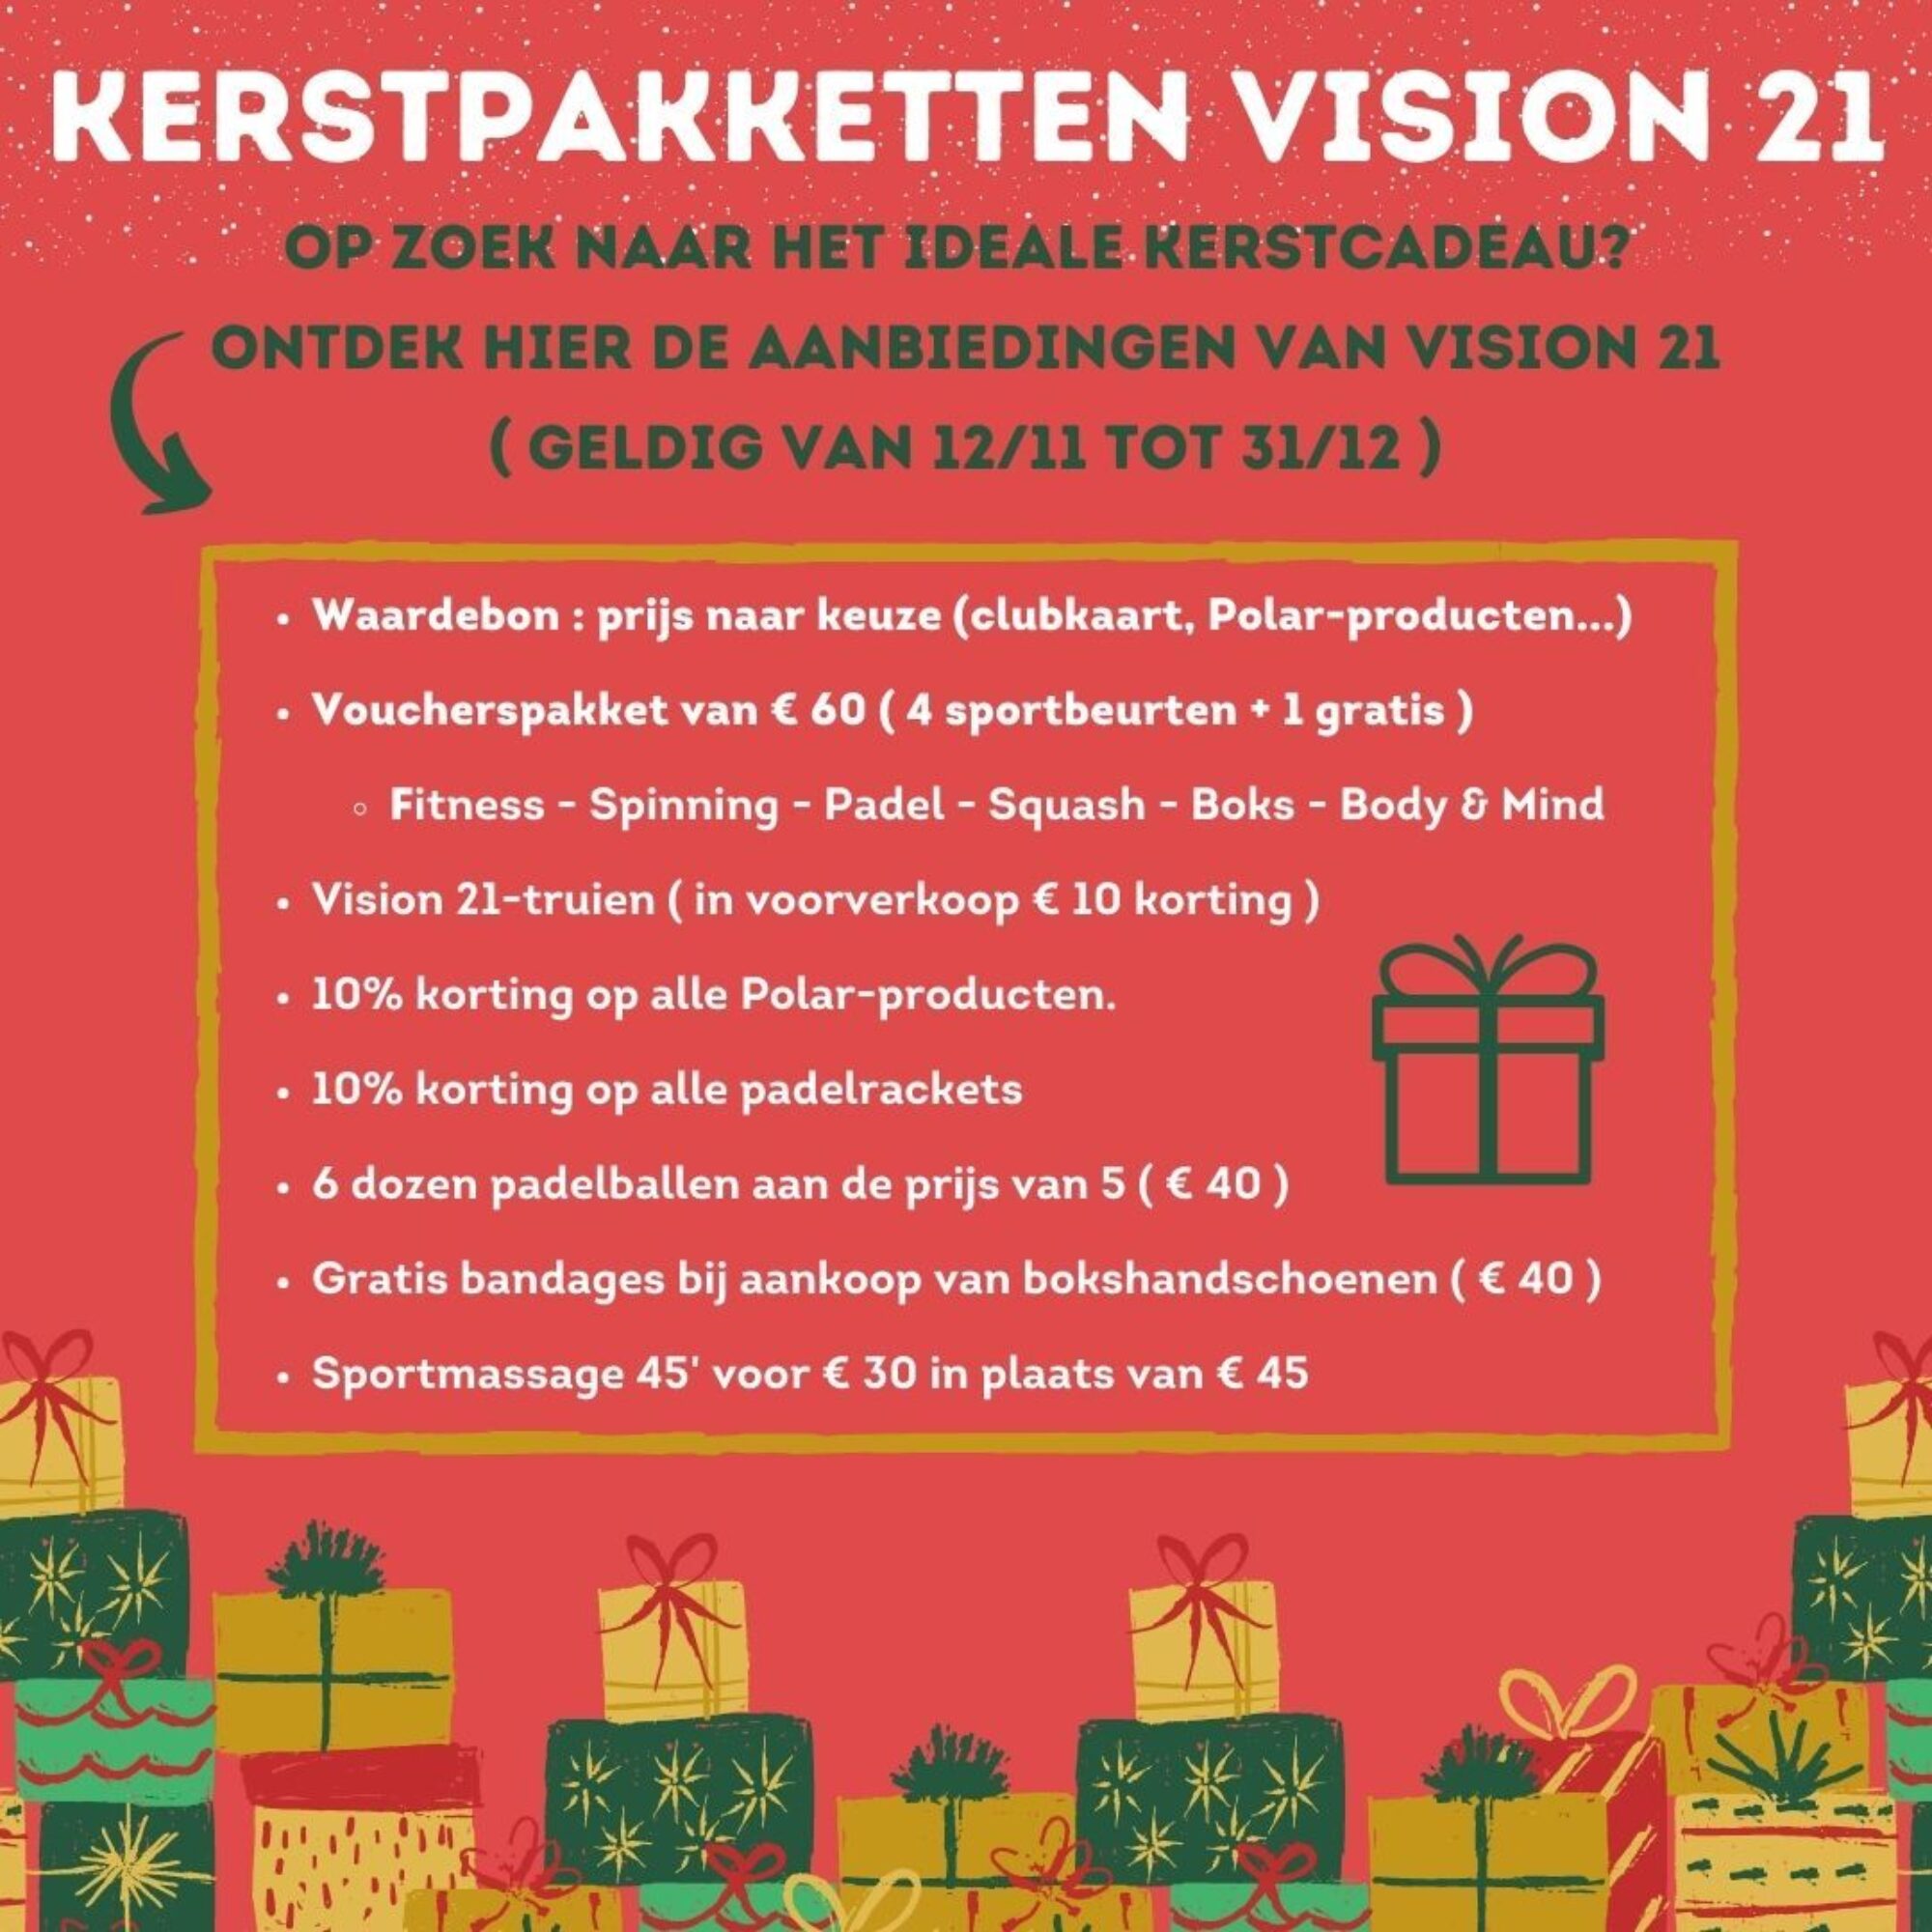 Kerstpakketten vision 21